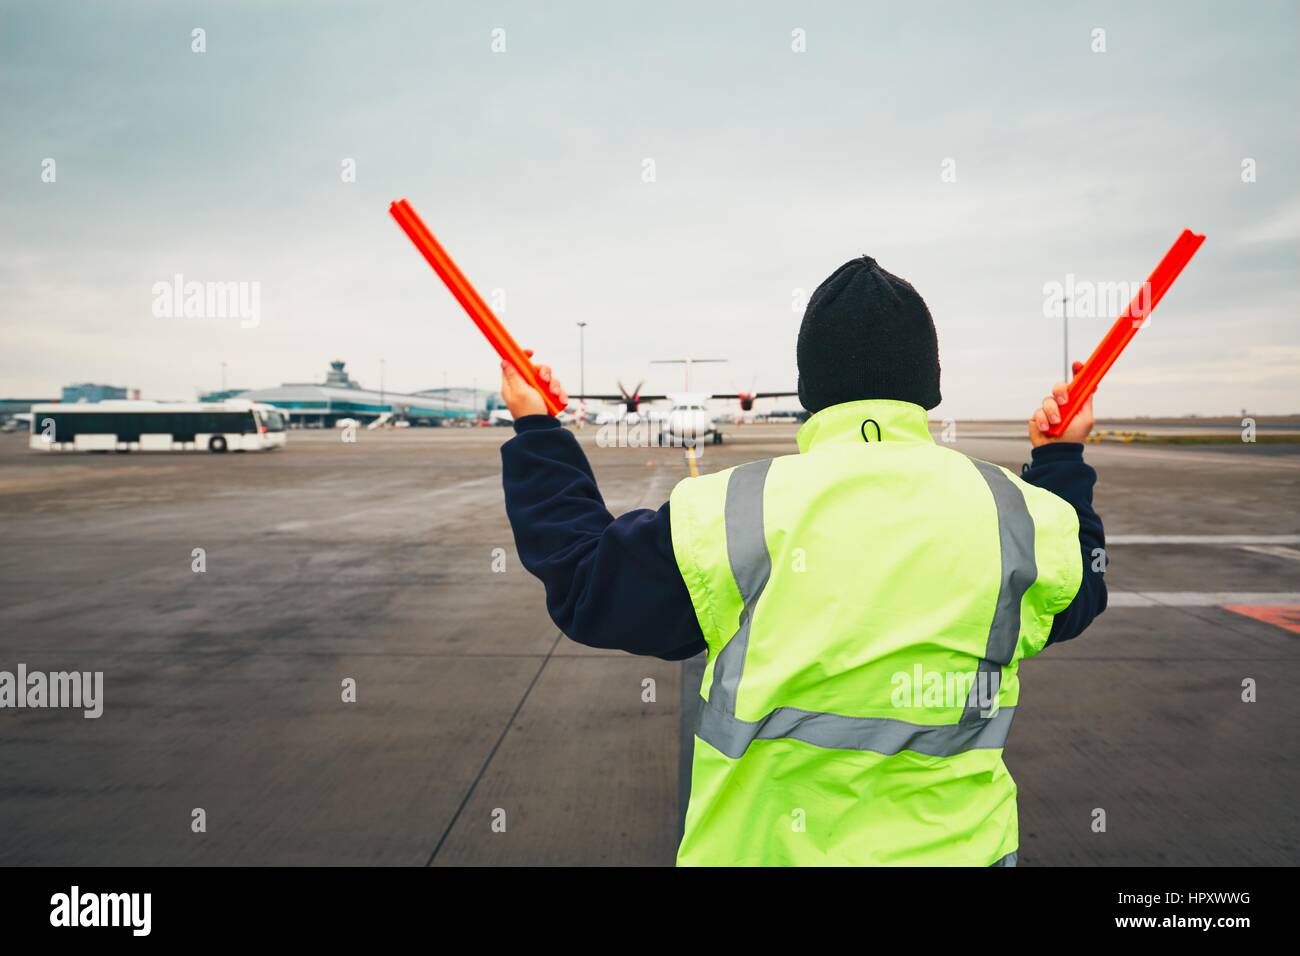 Praga, Repubblica Ceca - 1 dicembre 2016: aerei marshaller durante la segnalazione visiva per i piloti dopo lo sbarco. Vaclav Havel aeroporto Praga in decem Foto Stock